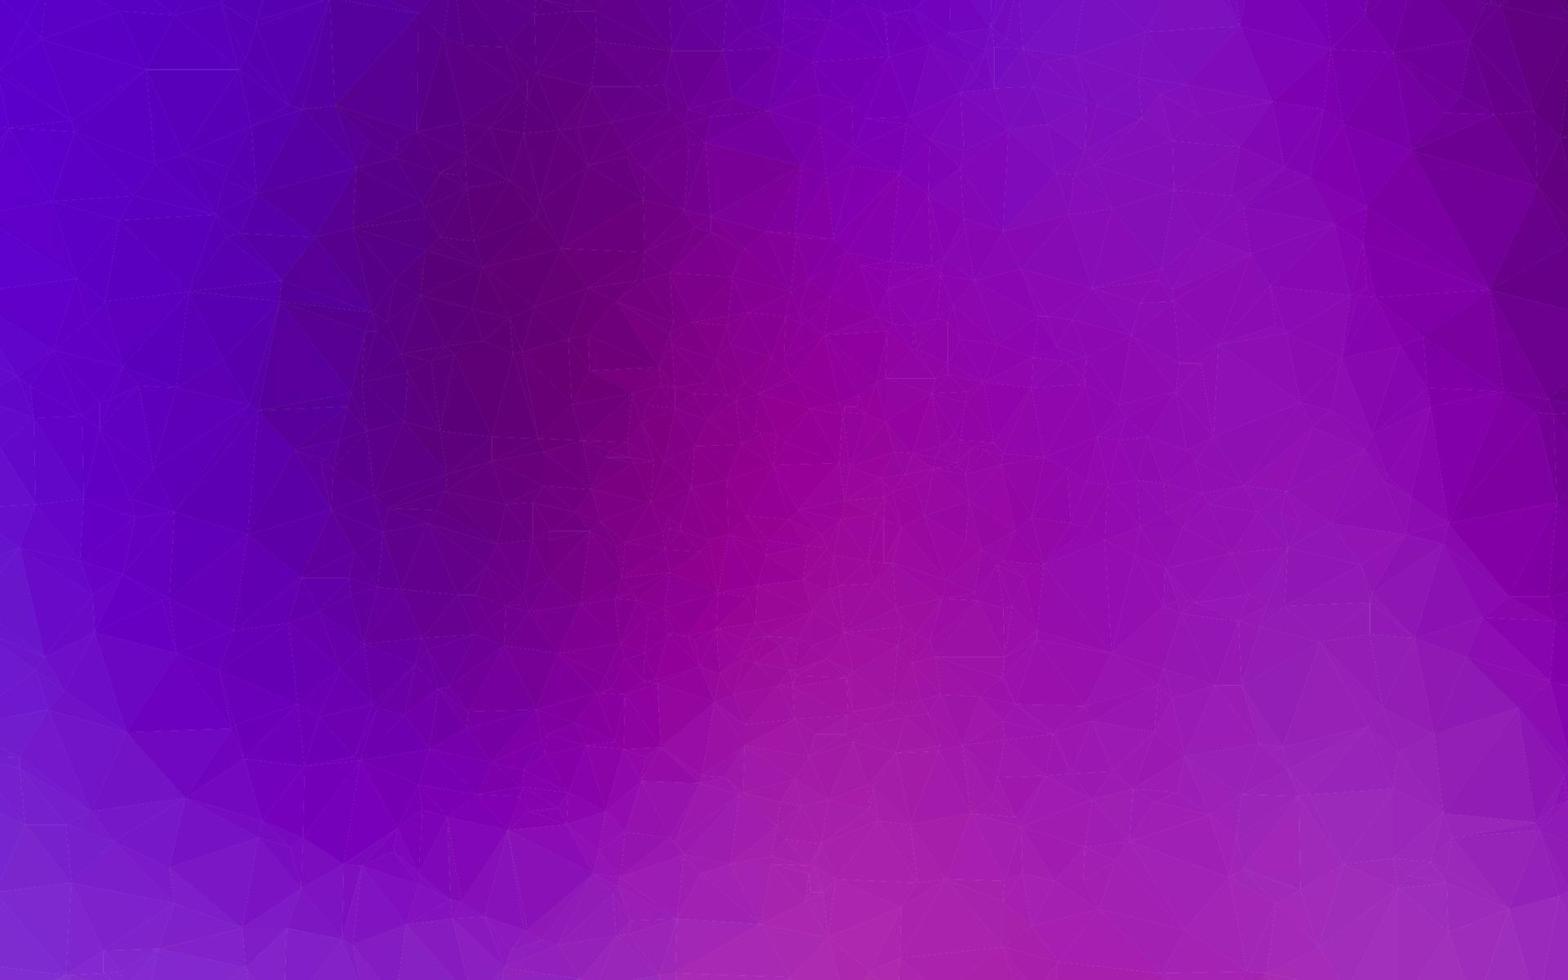 textura poligonal abstracta del vector púrpura claro.